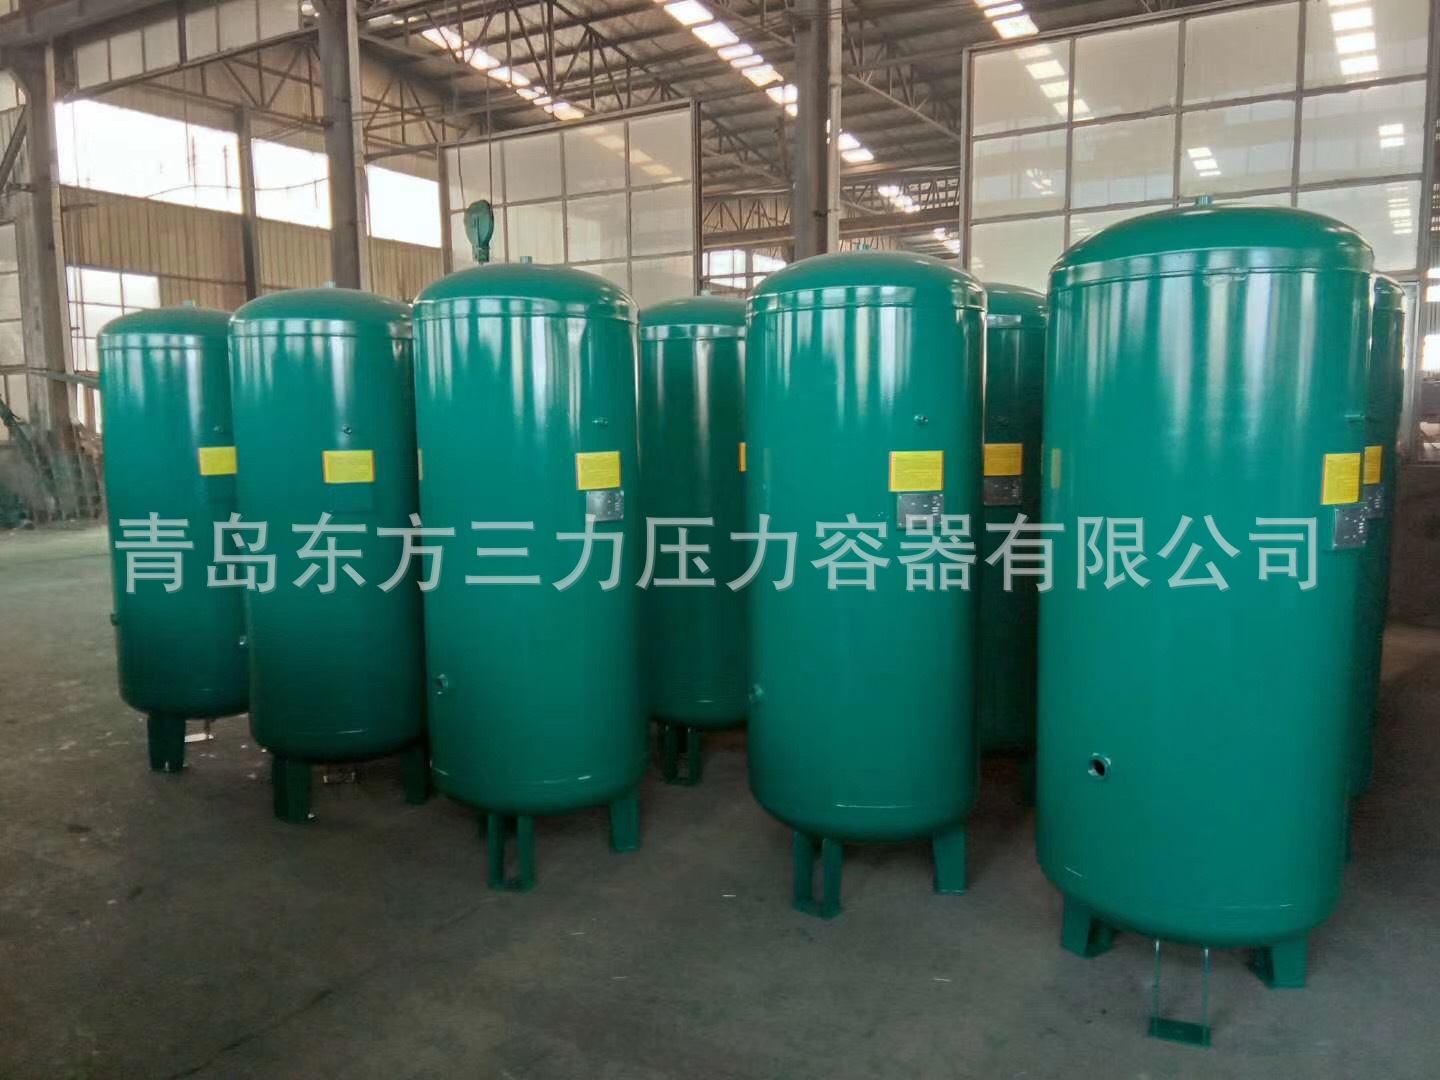 压力容器制造公司直销 储气罐6立方米 10kg压缩空气储罐氧气储罐示例图30